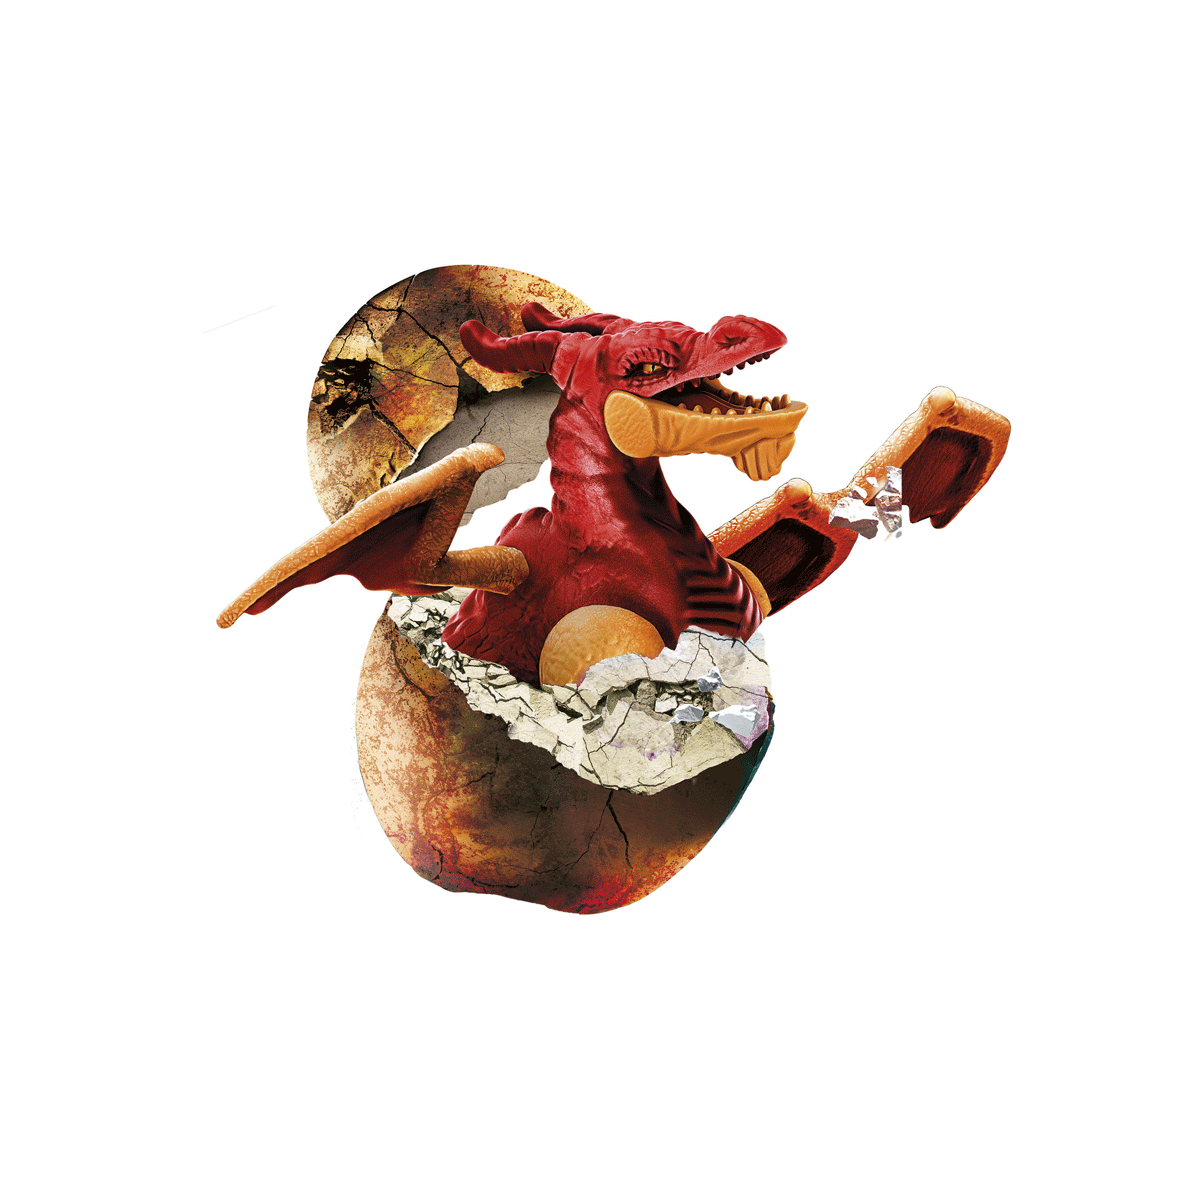 Clementoni - scienza e gioco fun - dig kit dragone rosso, gioco scientifico - Scienza e Gioco